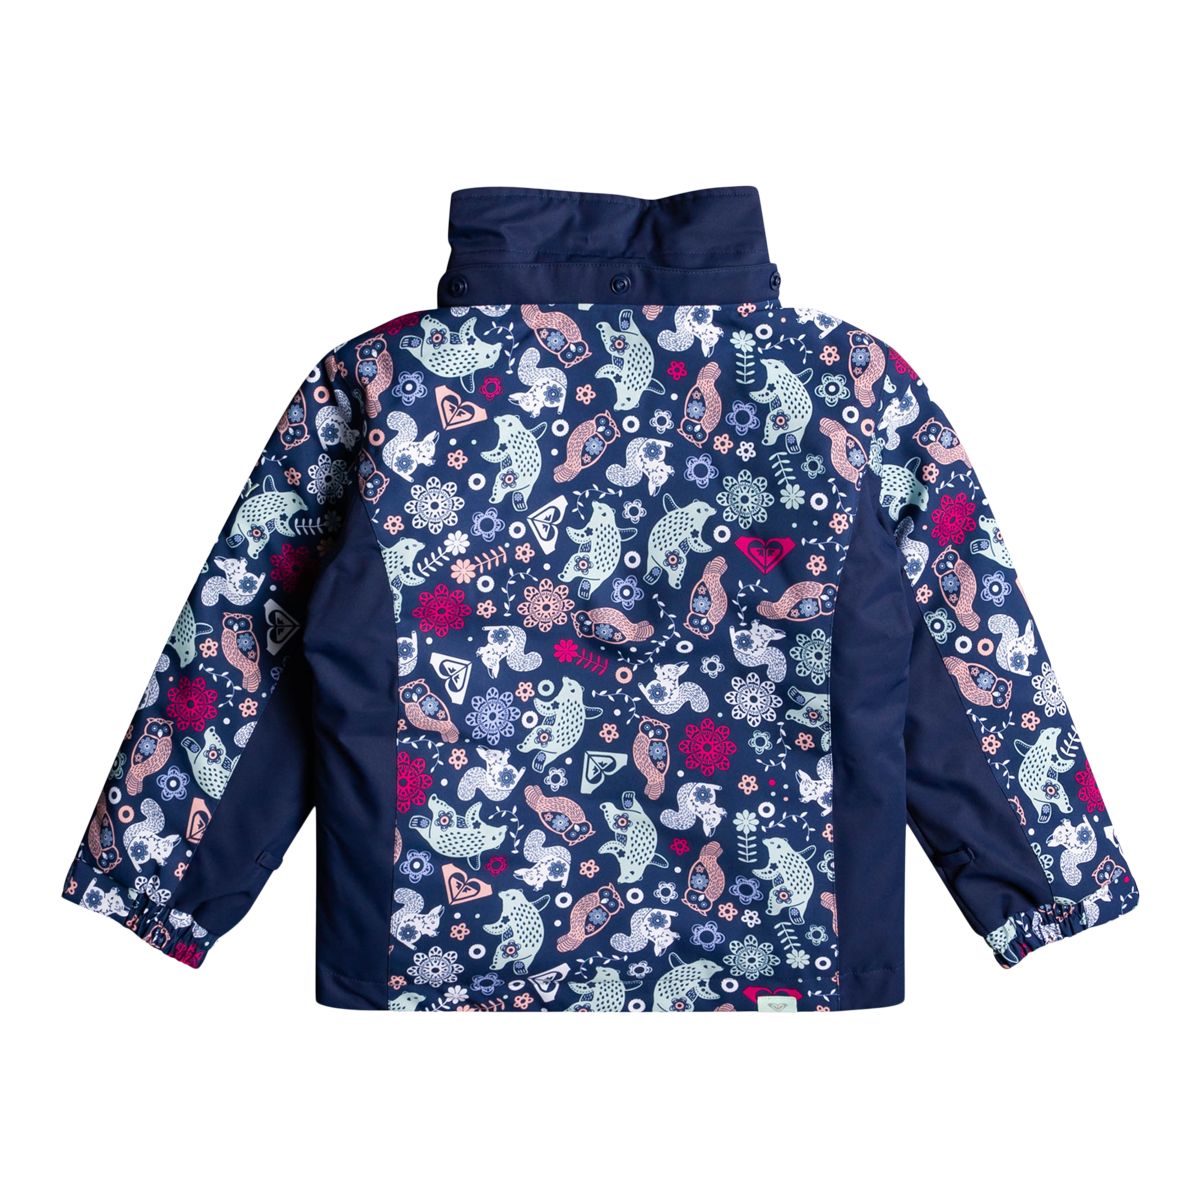 Roxy, Jackets & Coats, Roxy Dryflight Girls Jacket